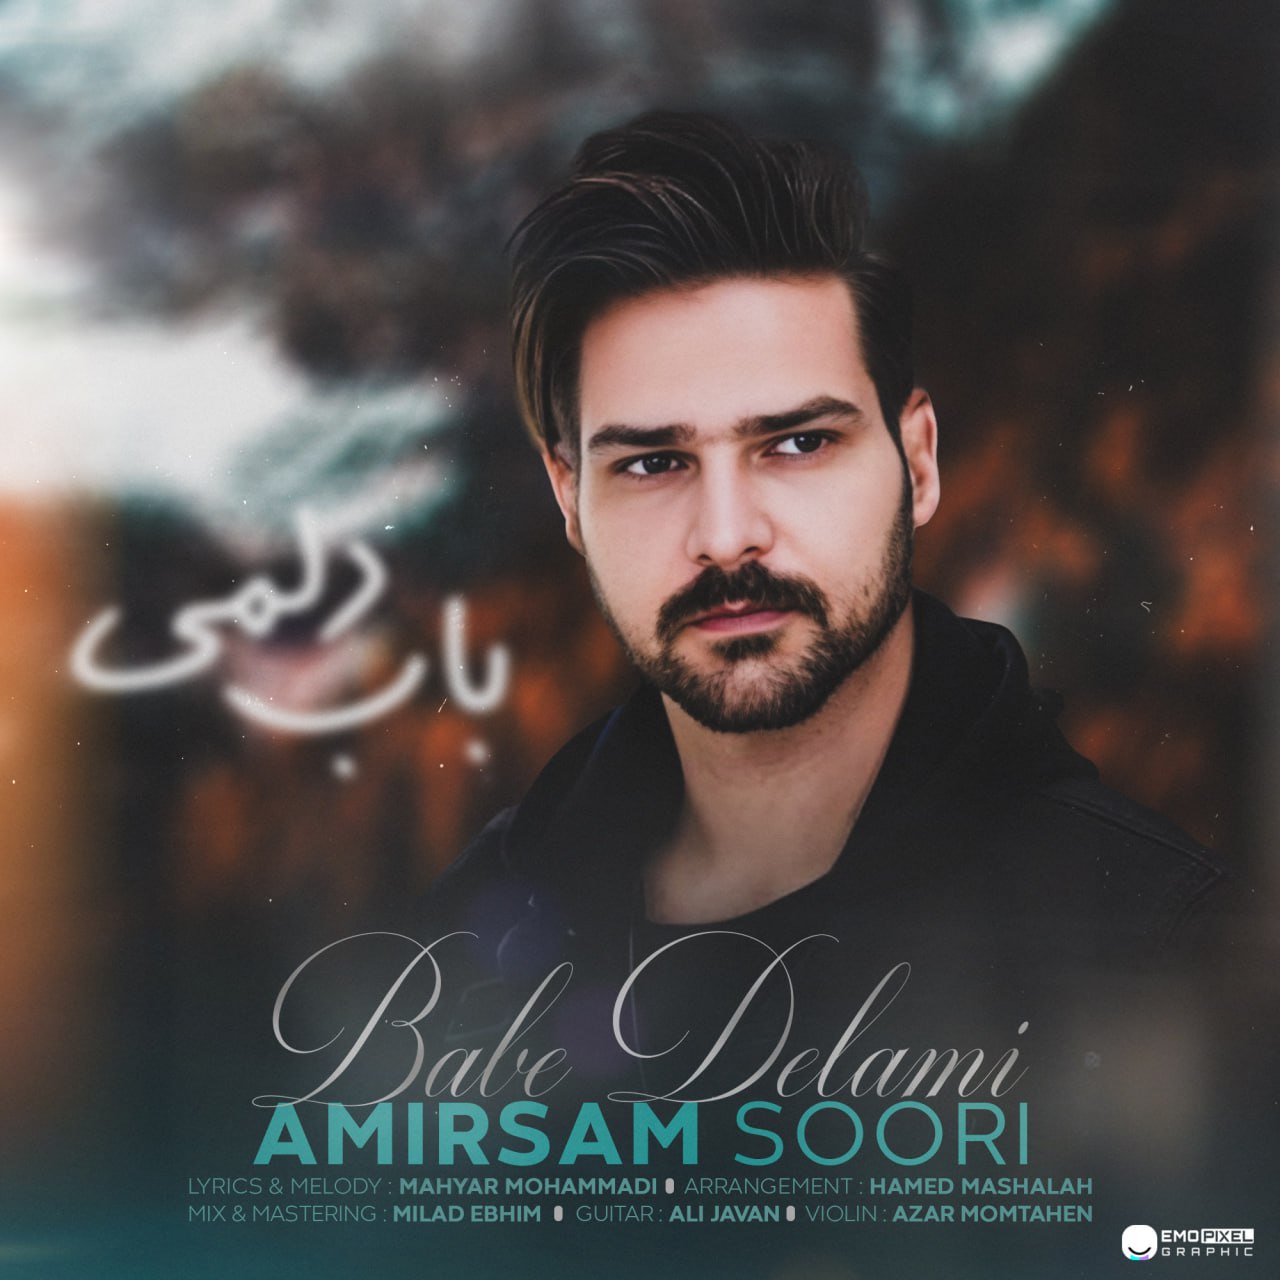 امیرسام سوری - باب دلمی